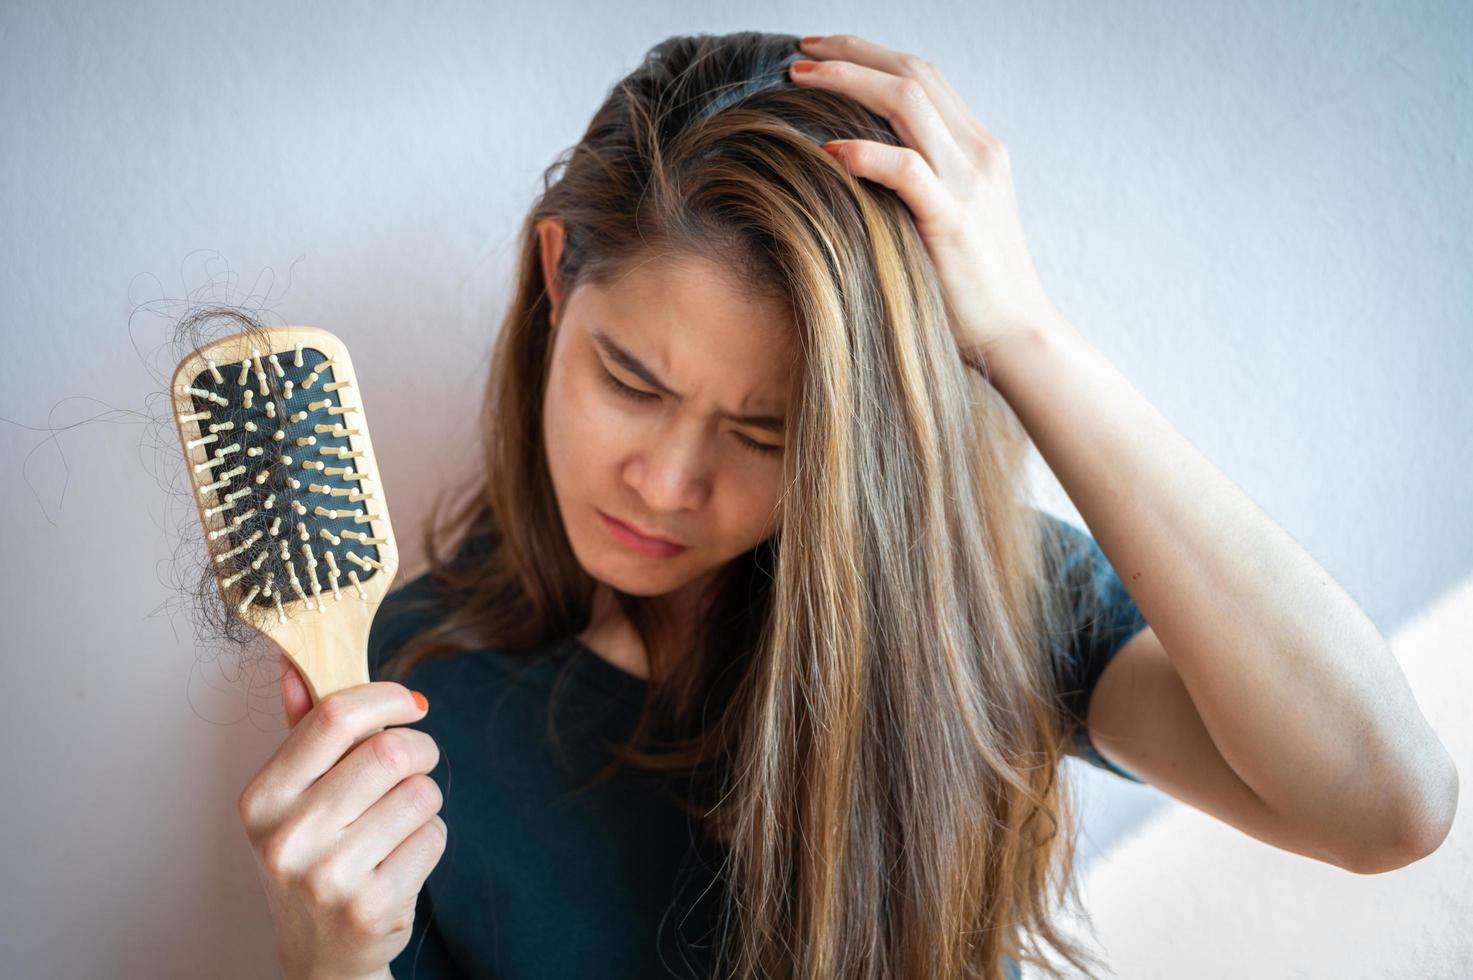 femme inquiète tenant un peigne avec perte de cheveux après s'être brossé les cheveux. la perte de cheveux causée par les antécédents familiaux, les changements hormonaux, le vieillissement malsain. photo